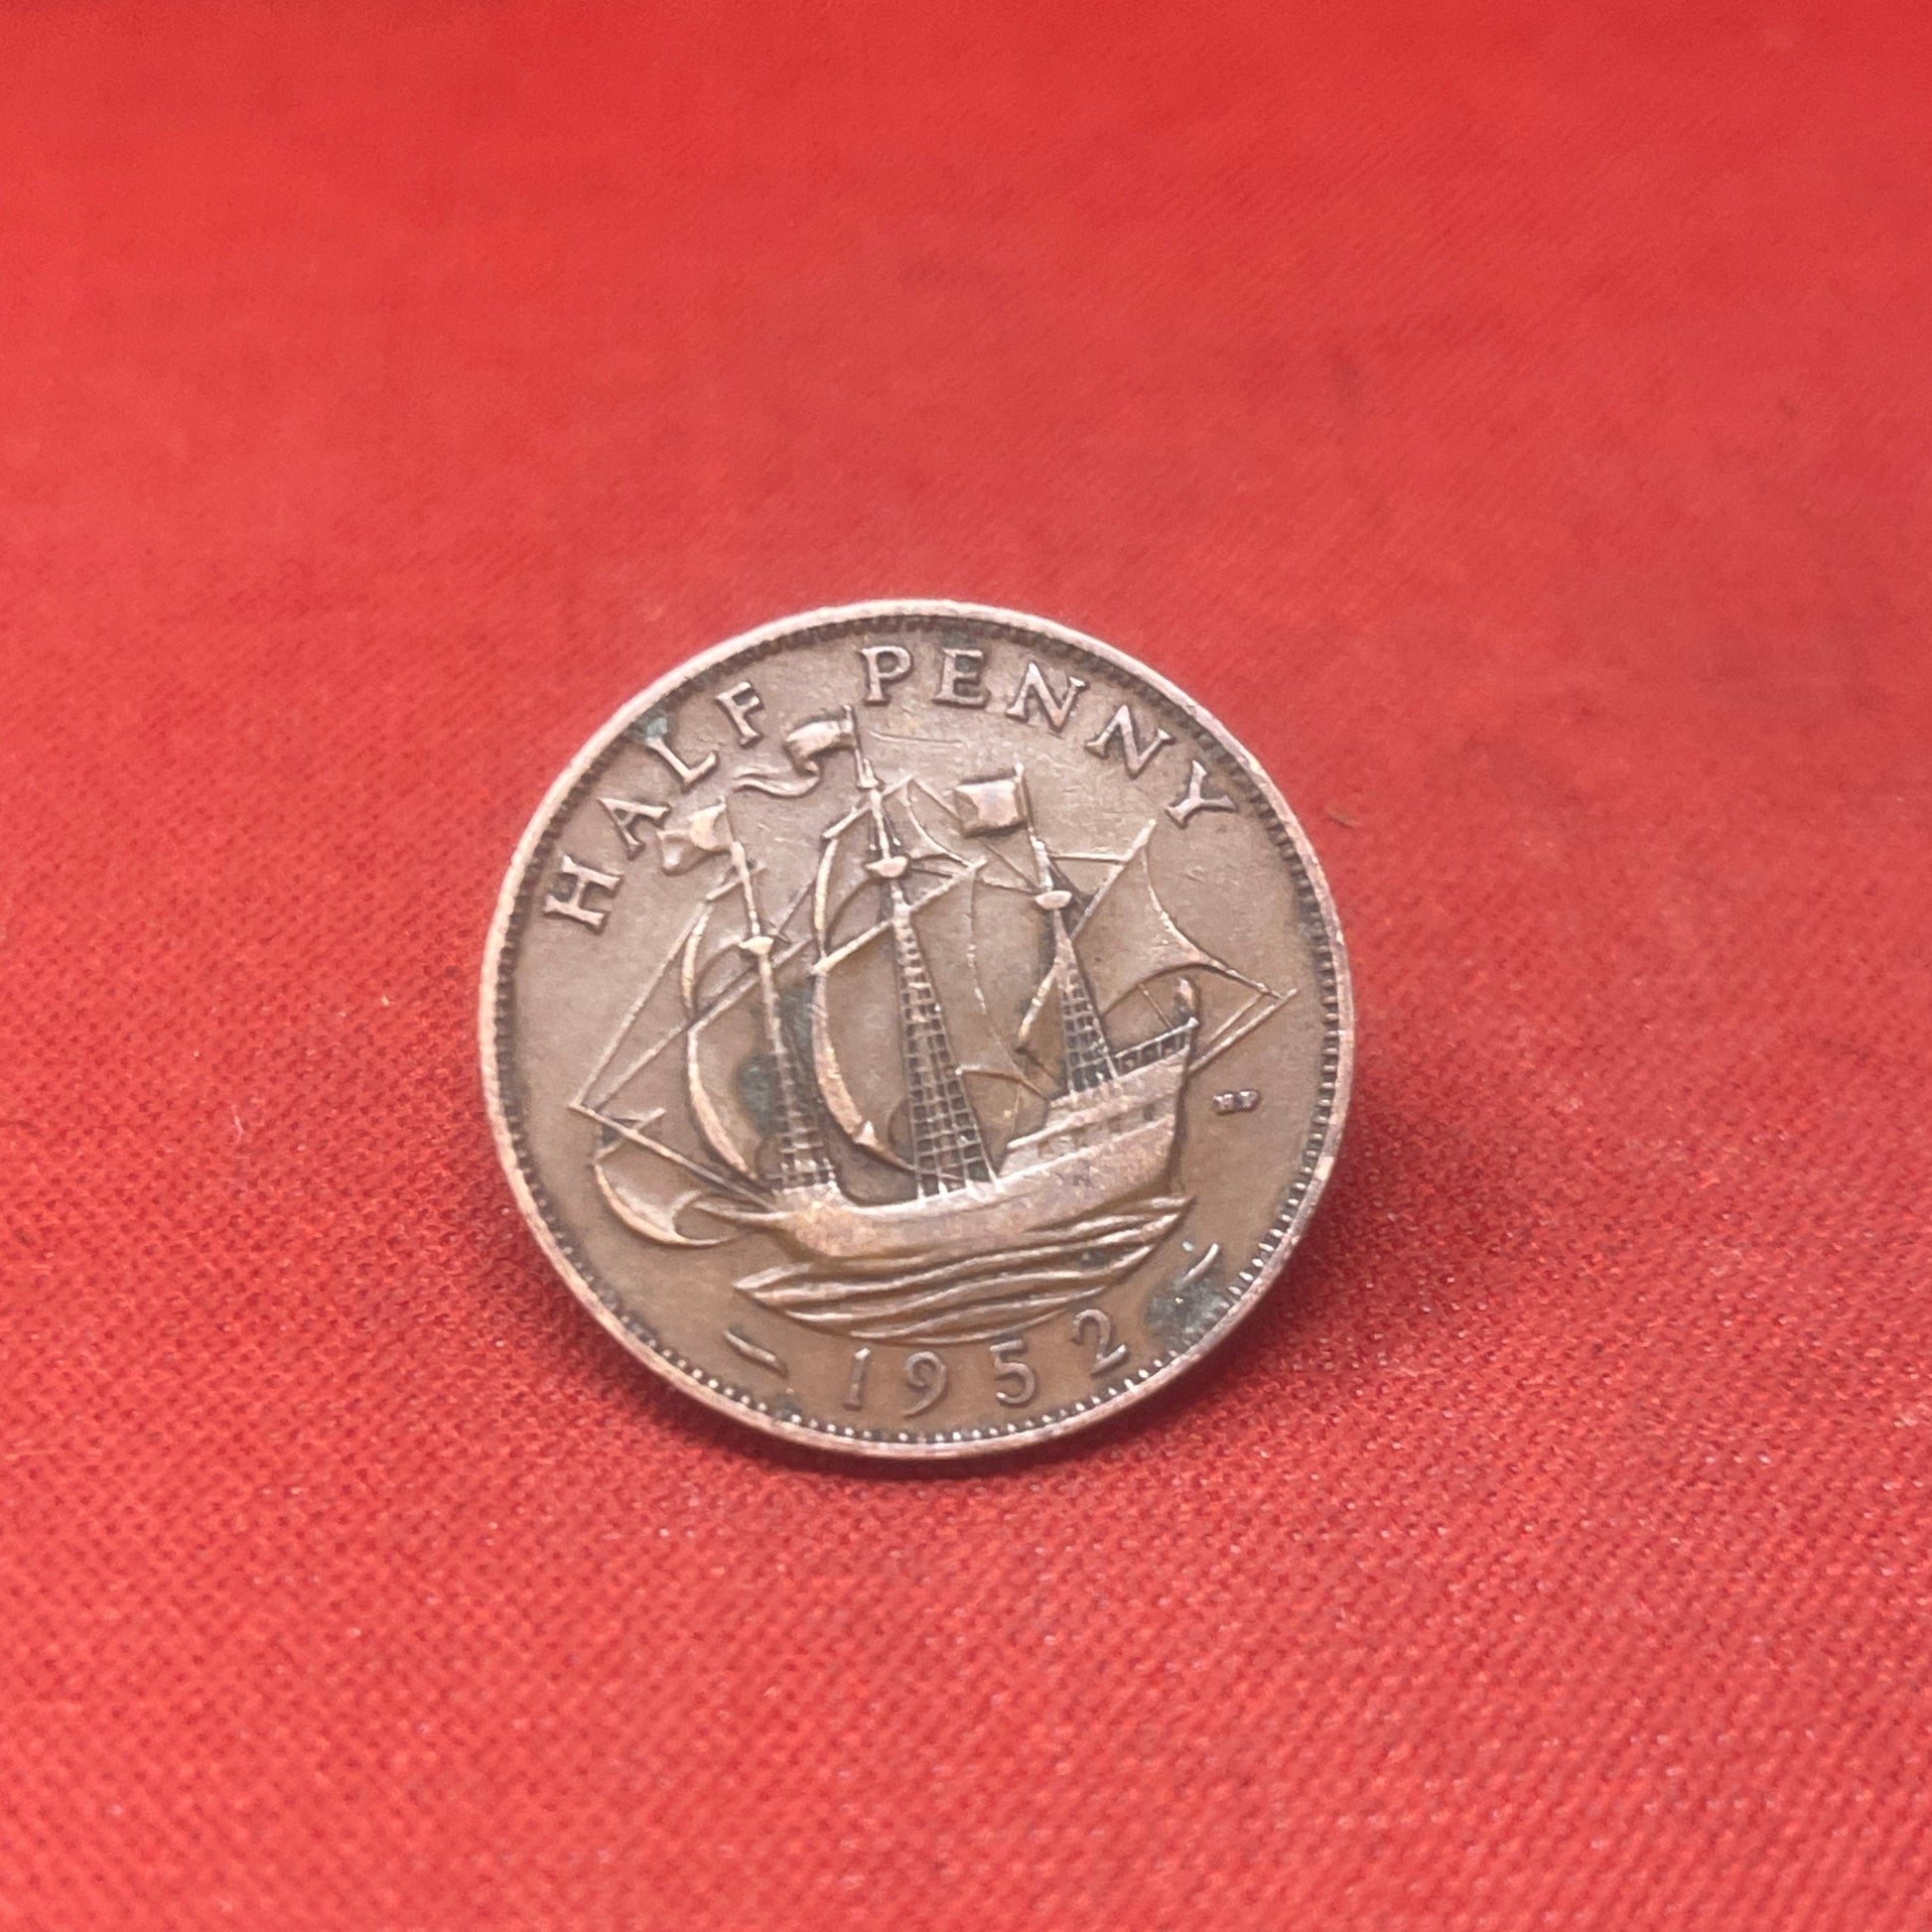 King George VI 1952 Half Penny